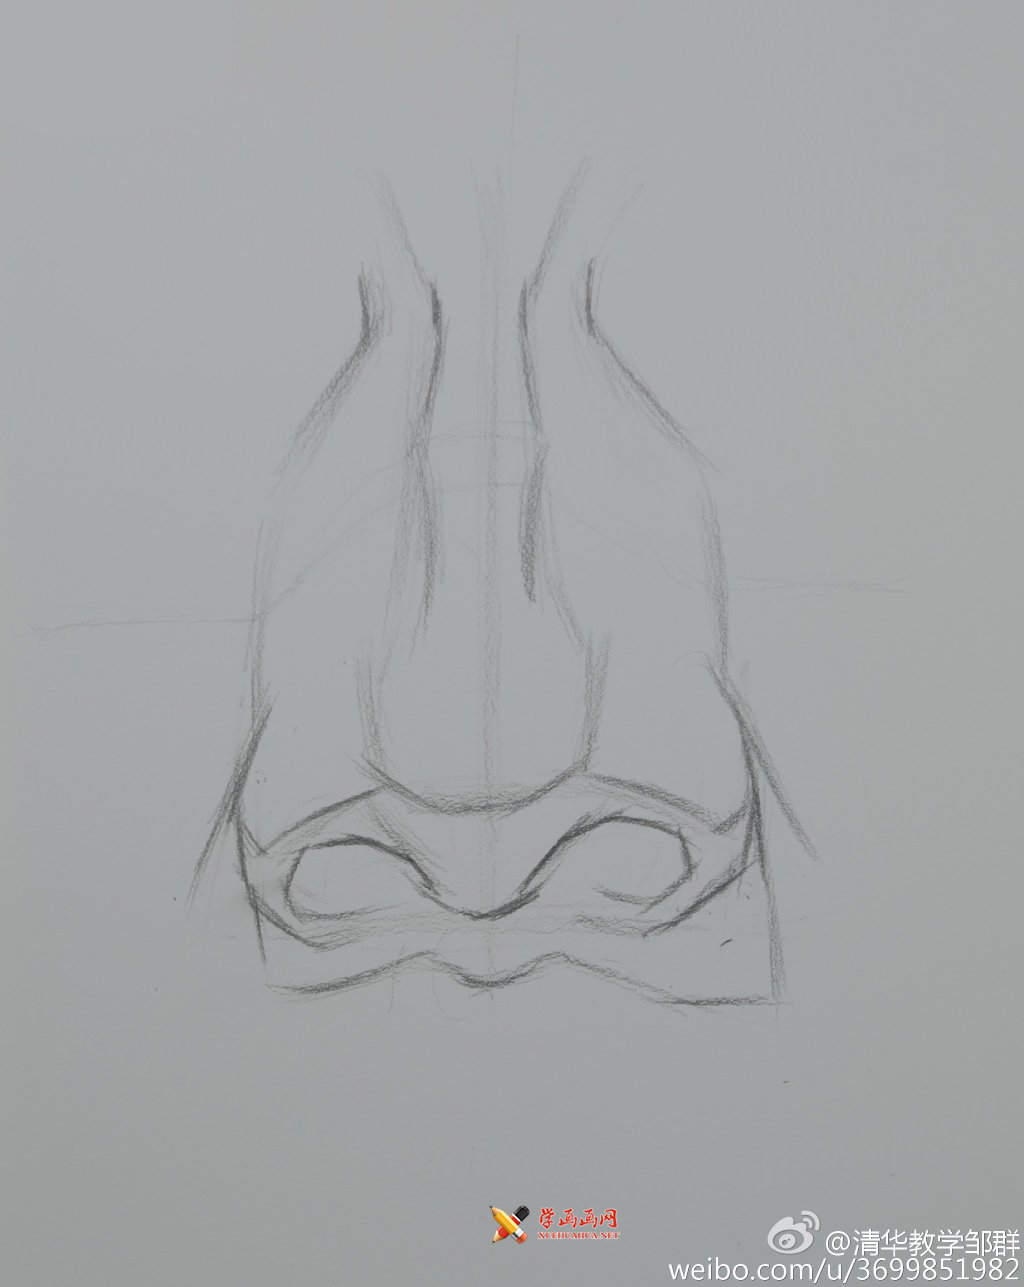 鼻子的画法 鼻子的画法步骤图_儿童画鼻子